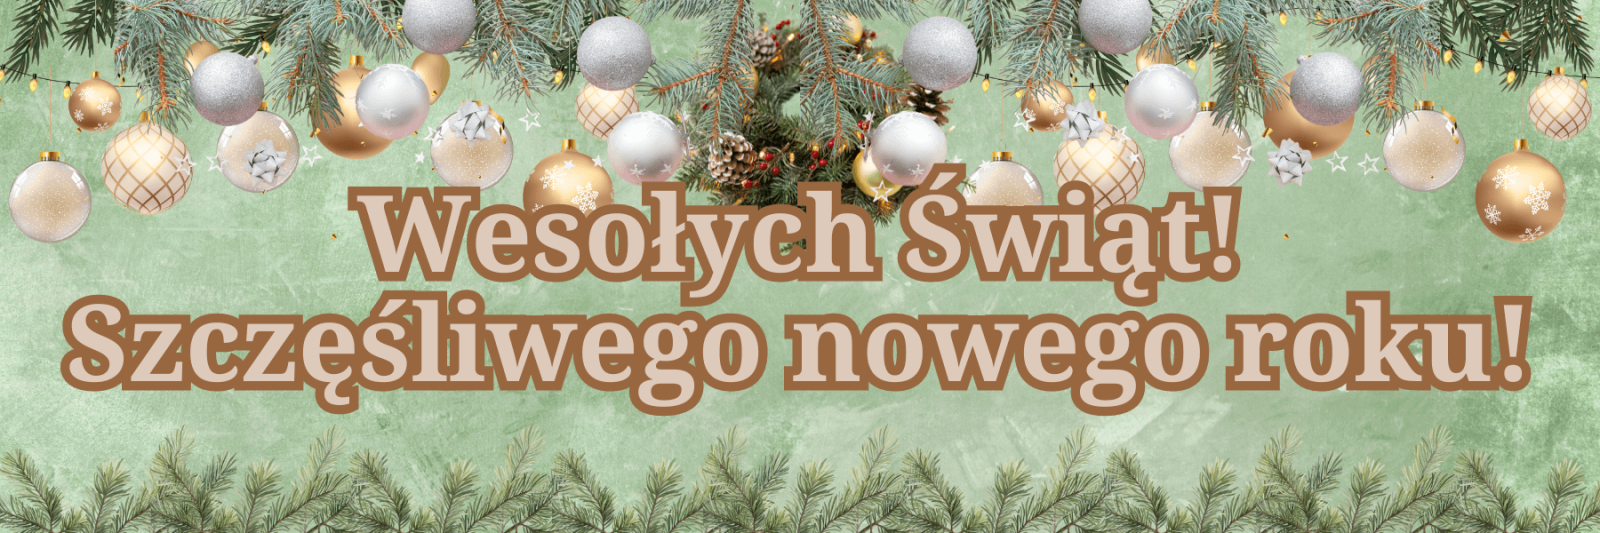 Buon Natale e Felice Anno nuovo! in polacco